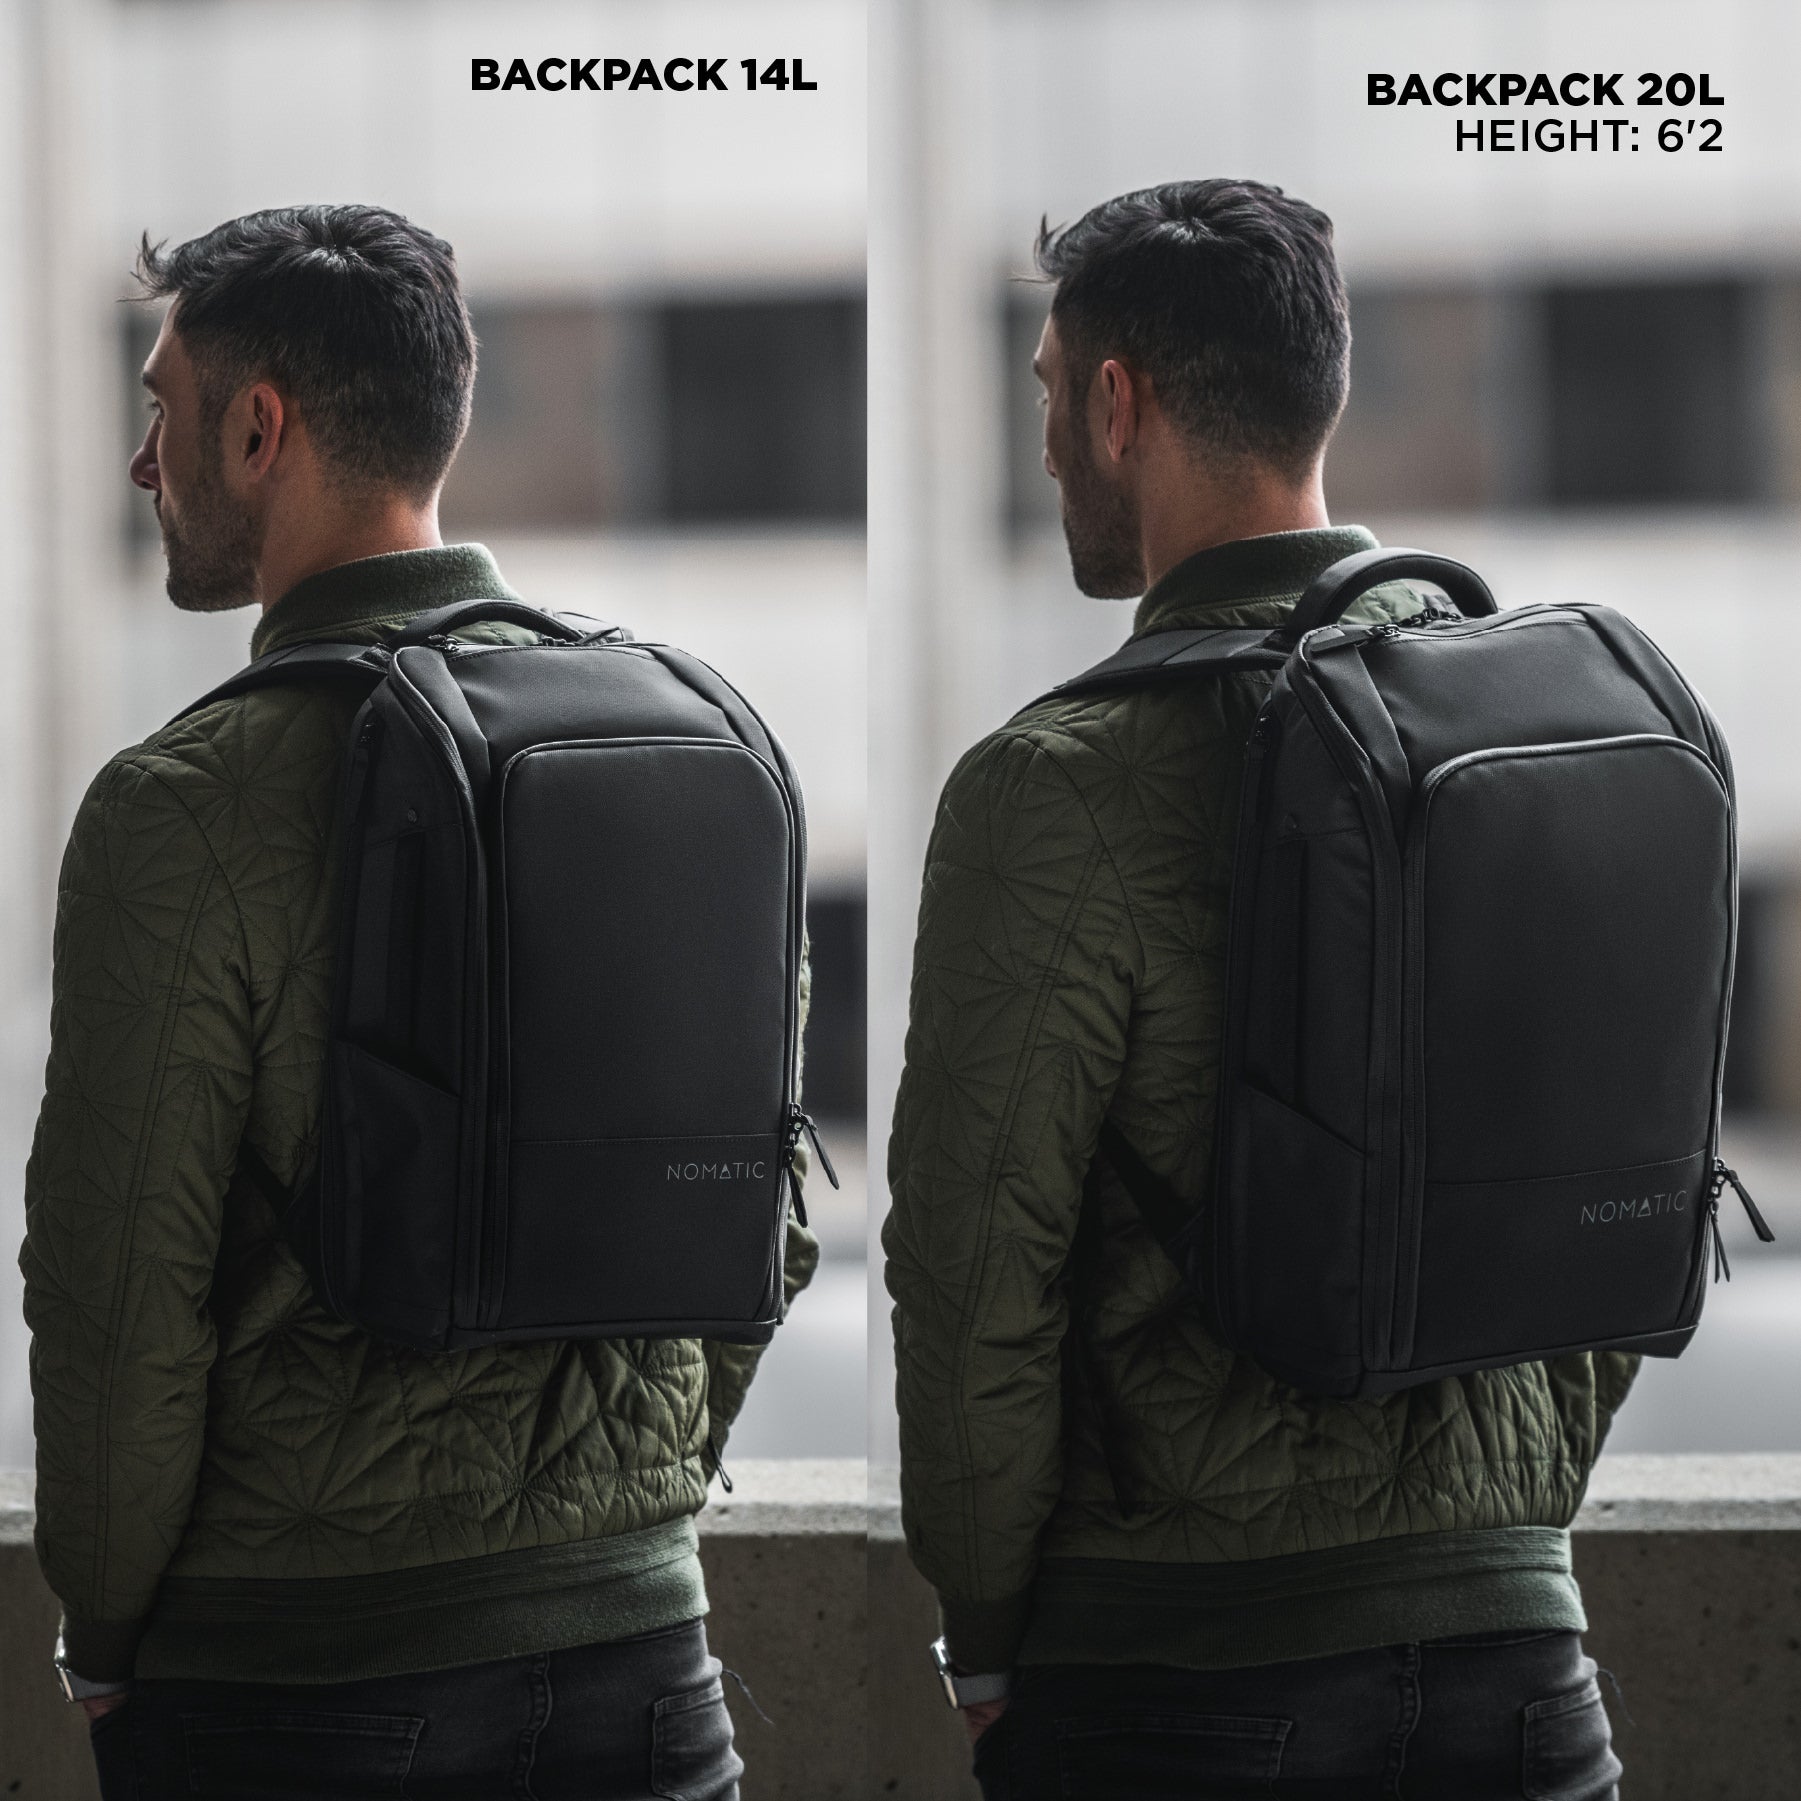 nomatic travel pack vs backpack